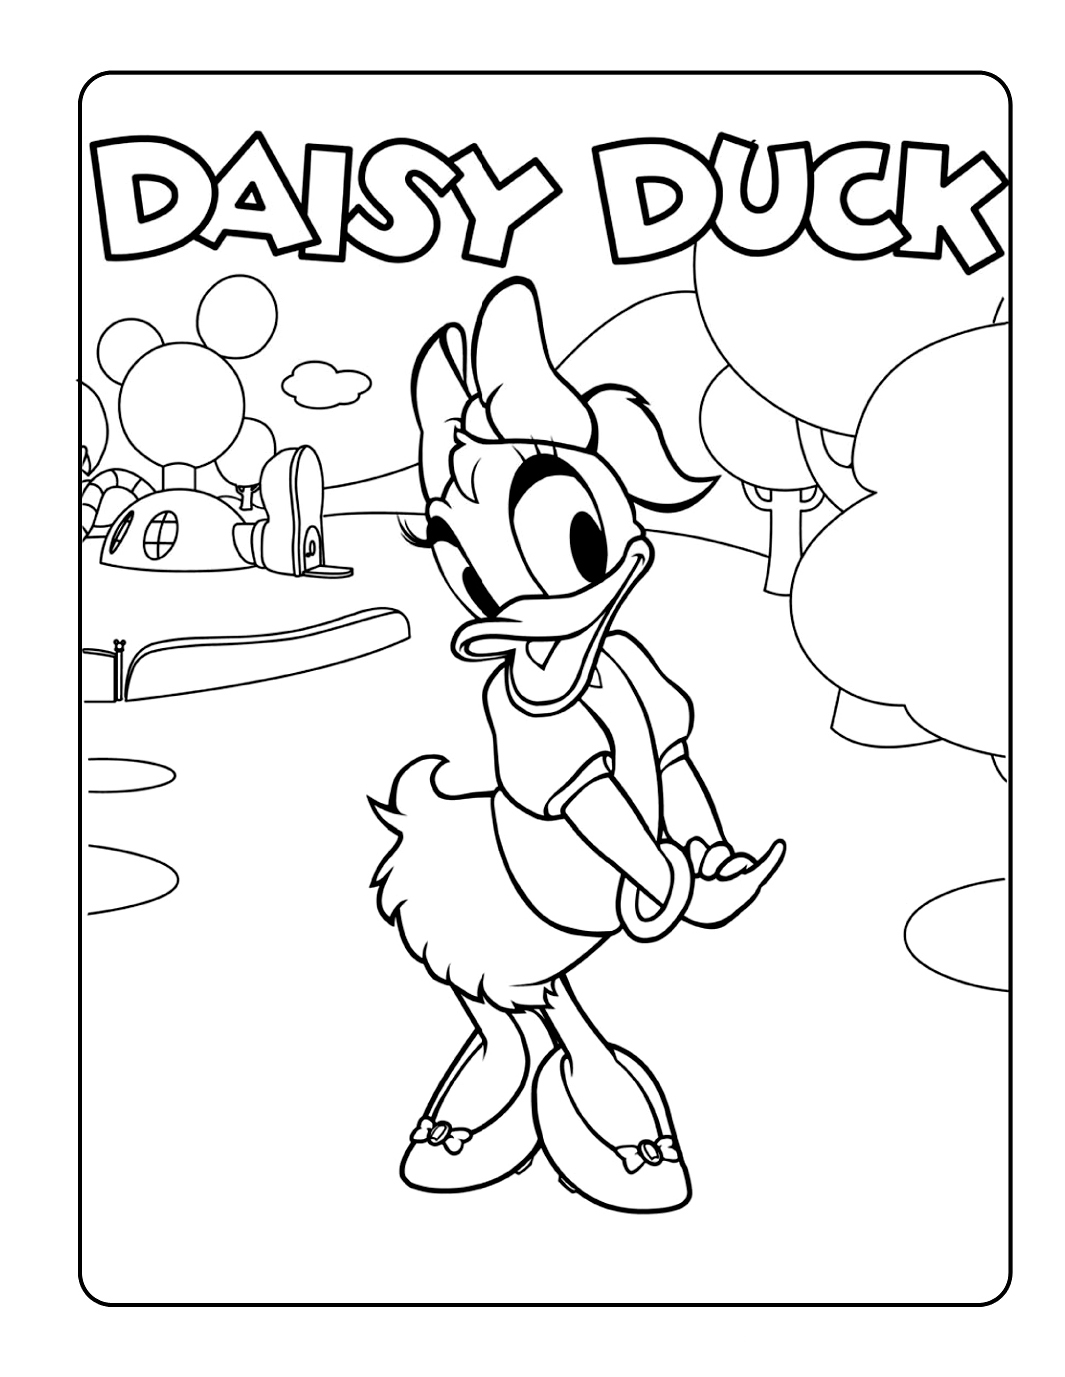 Daisy Duck devant la maison de mickey